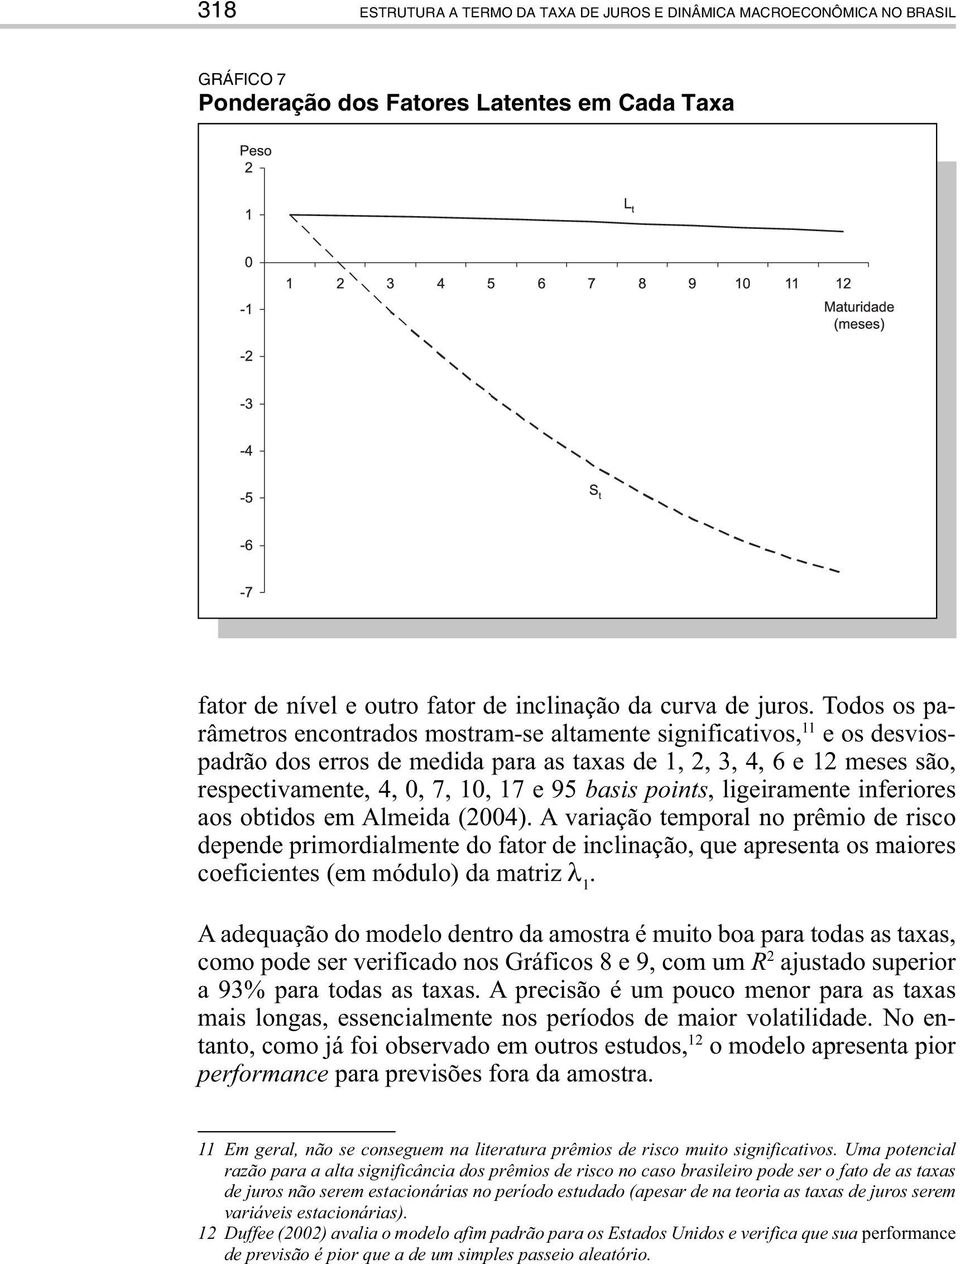 ligeiramene inferiores aos obidos em Almeida (2004). A variação emporal no prêmio de risco depende primordialmene do faor de inclinação, que apresena os maiores coeficienes (em módulo) da mariz λ 1.